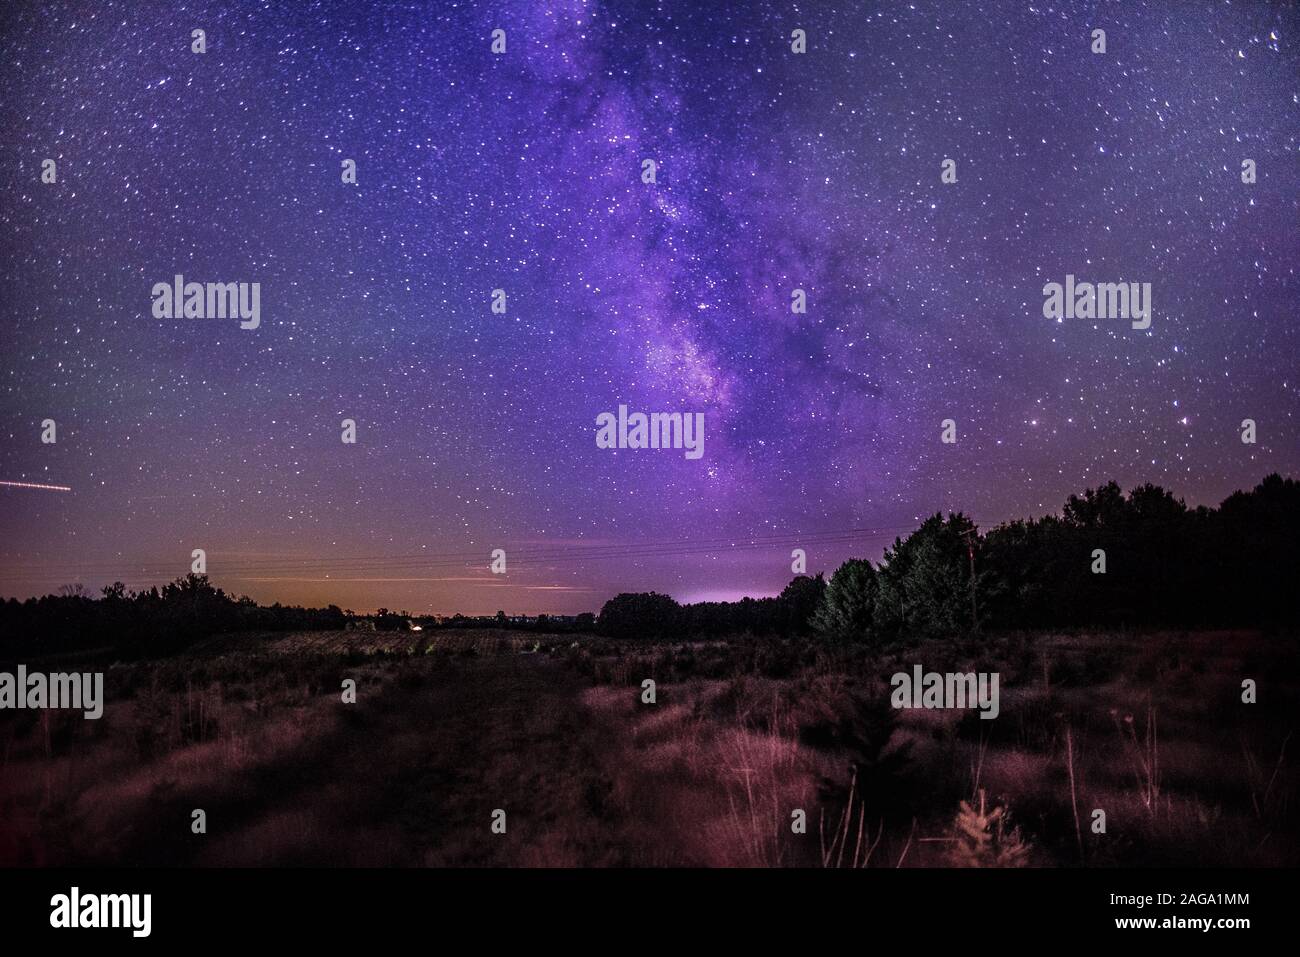 Schöne Aufnahme von einem verlassenen Feld mit Bäumen unter einem Dunkelvioletter Himmel gefüllt mit Sternen Stockfoto